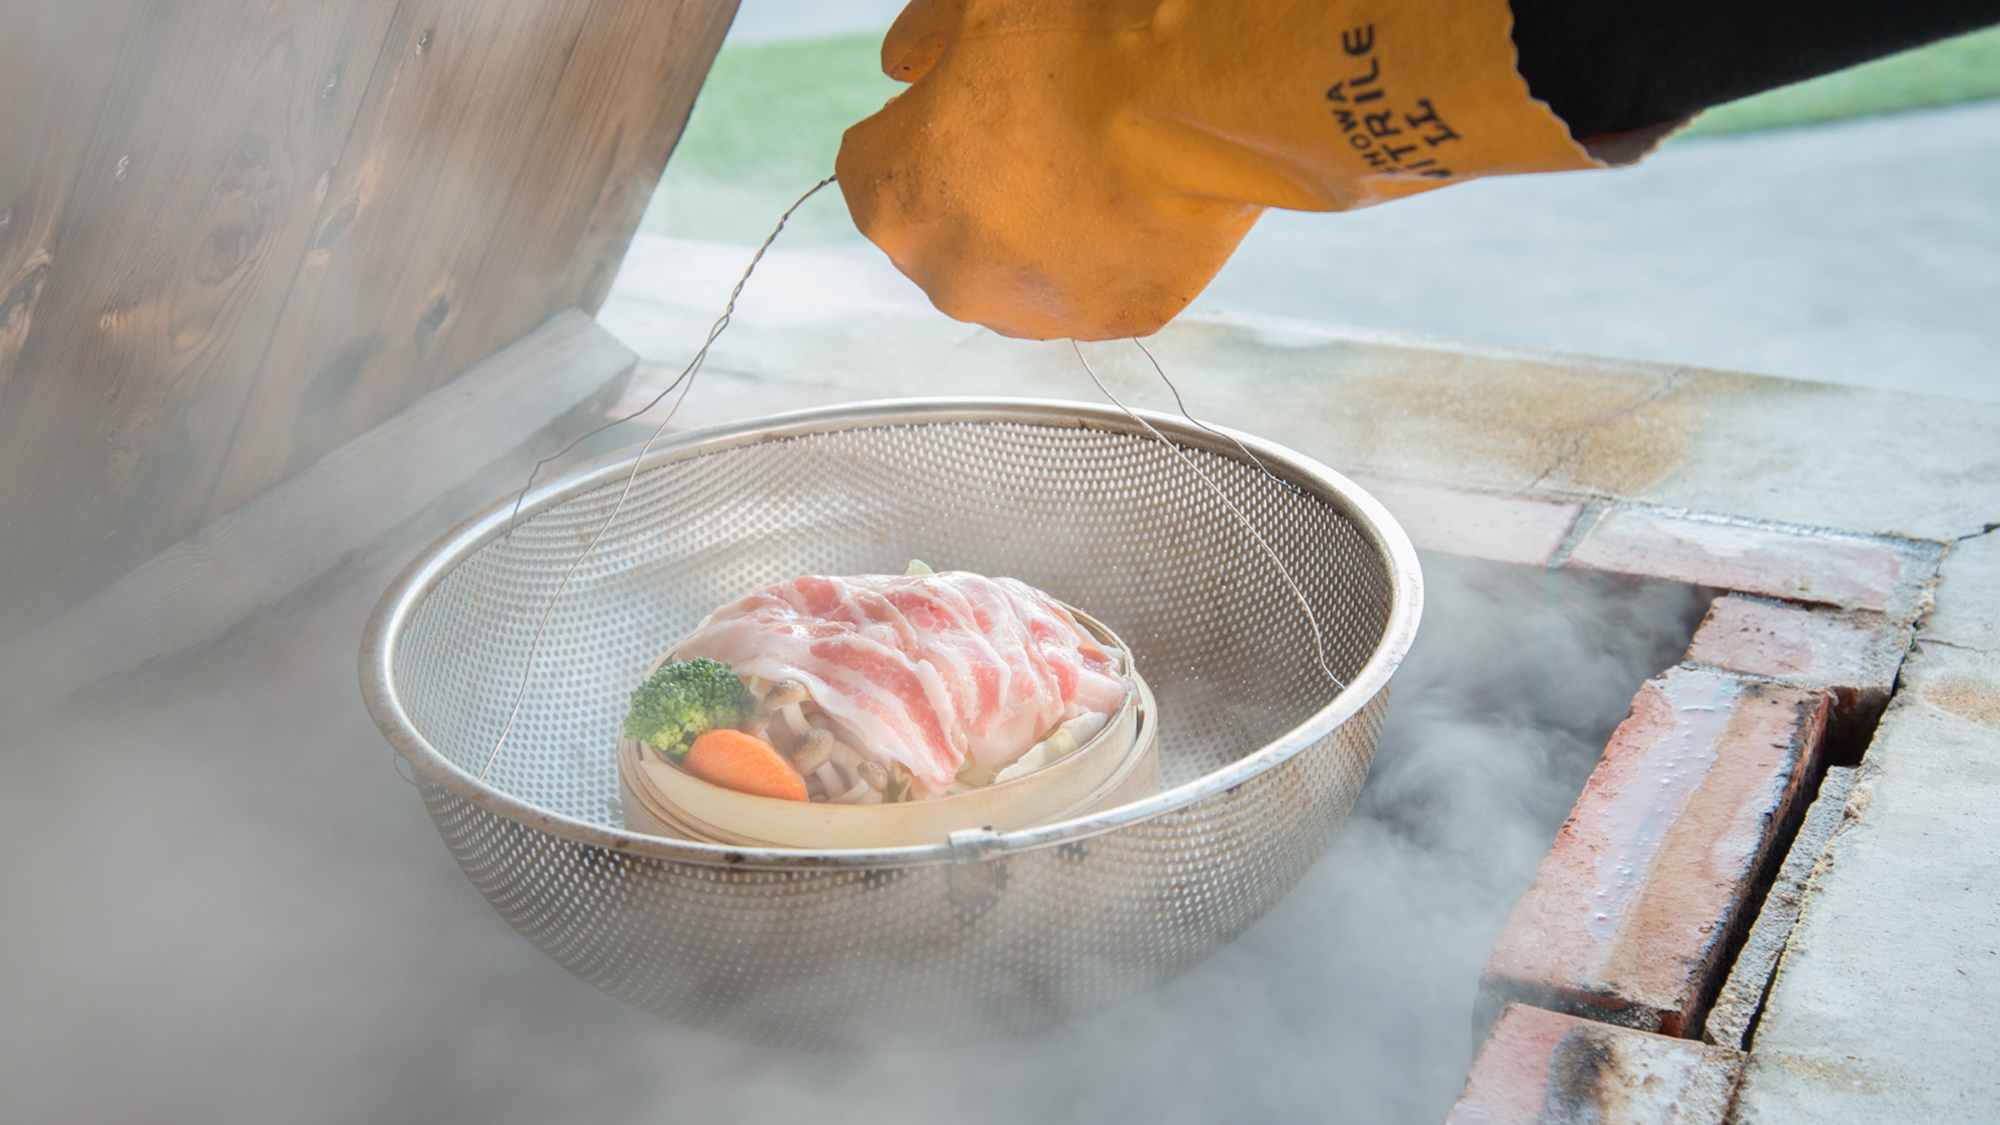 *【海鮮市場“蒸し釜や”】さっそく蒸してみましょう。日本一の熱量を誇る温泉蒸気へ。